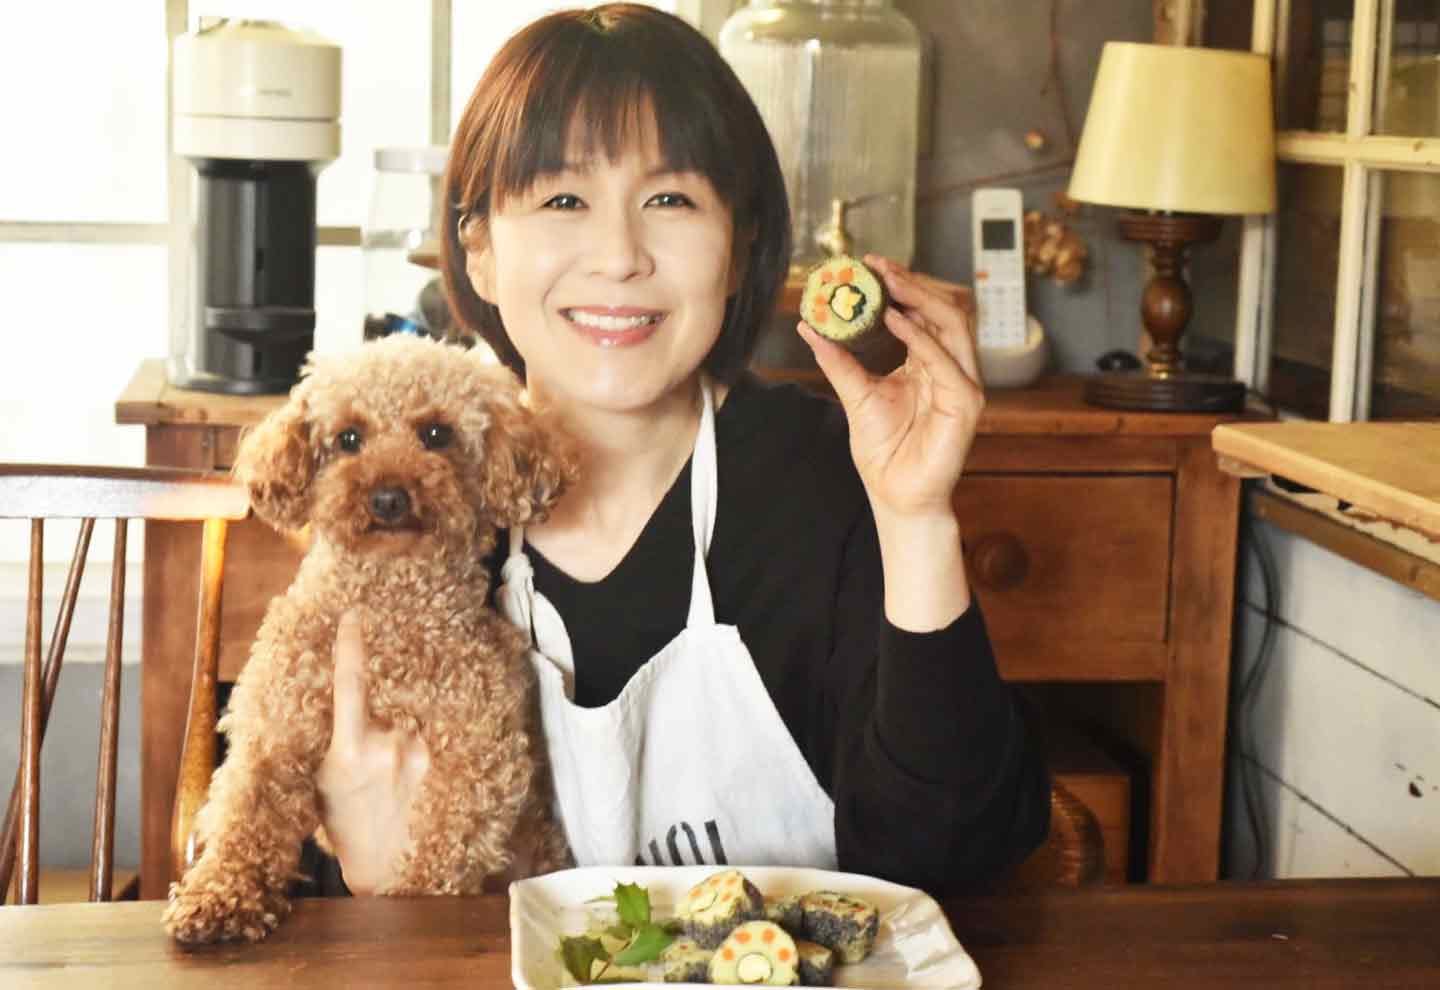 愛犬と節分 安心食材だけで恵方巻 簡単なのに可愛い飾り巻き寿司の作り方 Diy 手作り犬アイテム わんクォール